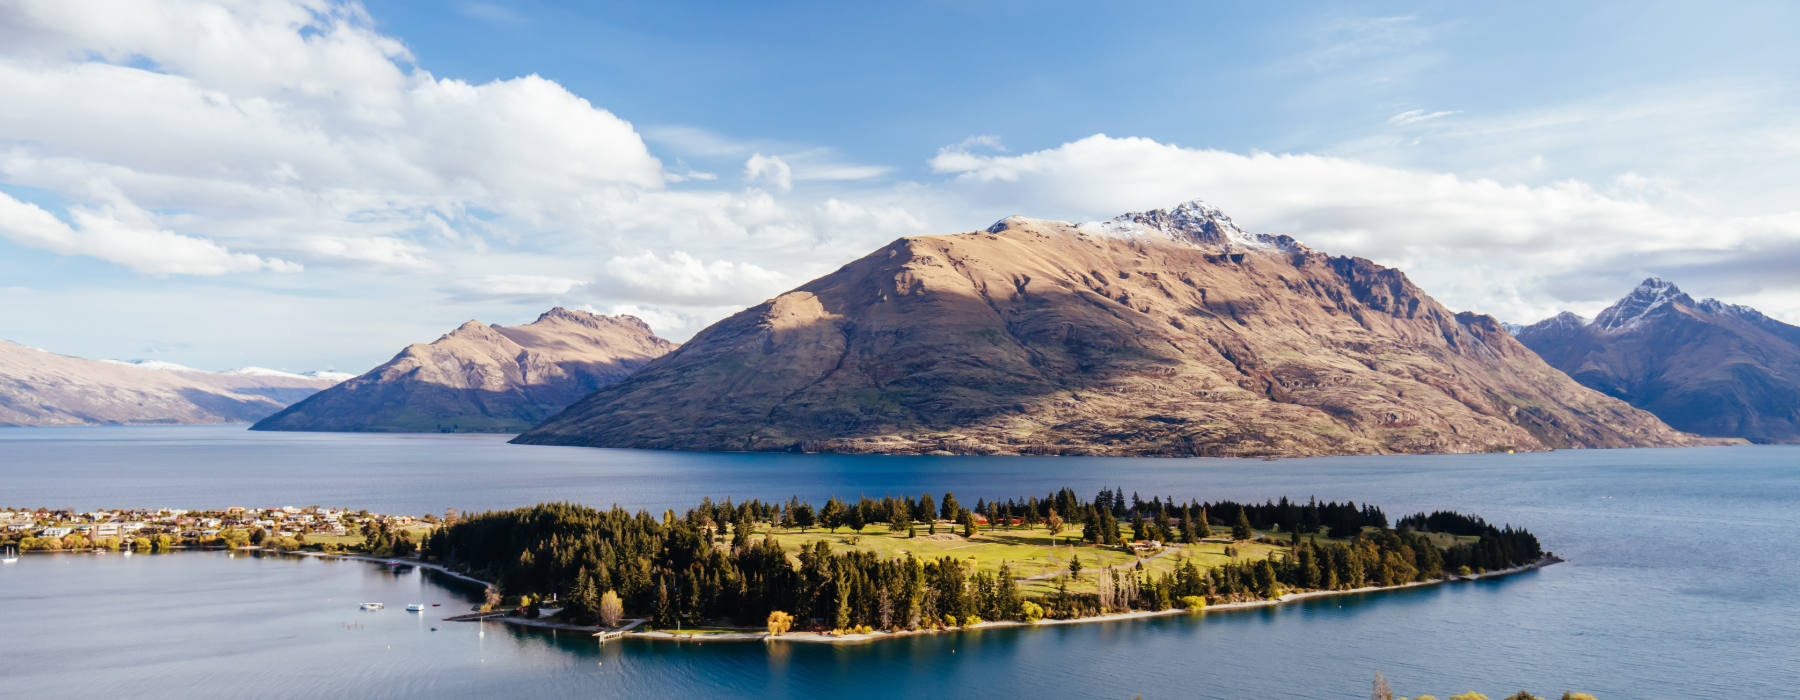 All our New Zealand<br class="hidden-md hidden-lg" /> Responsible Travel